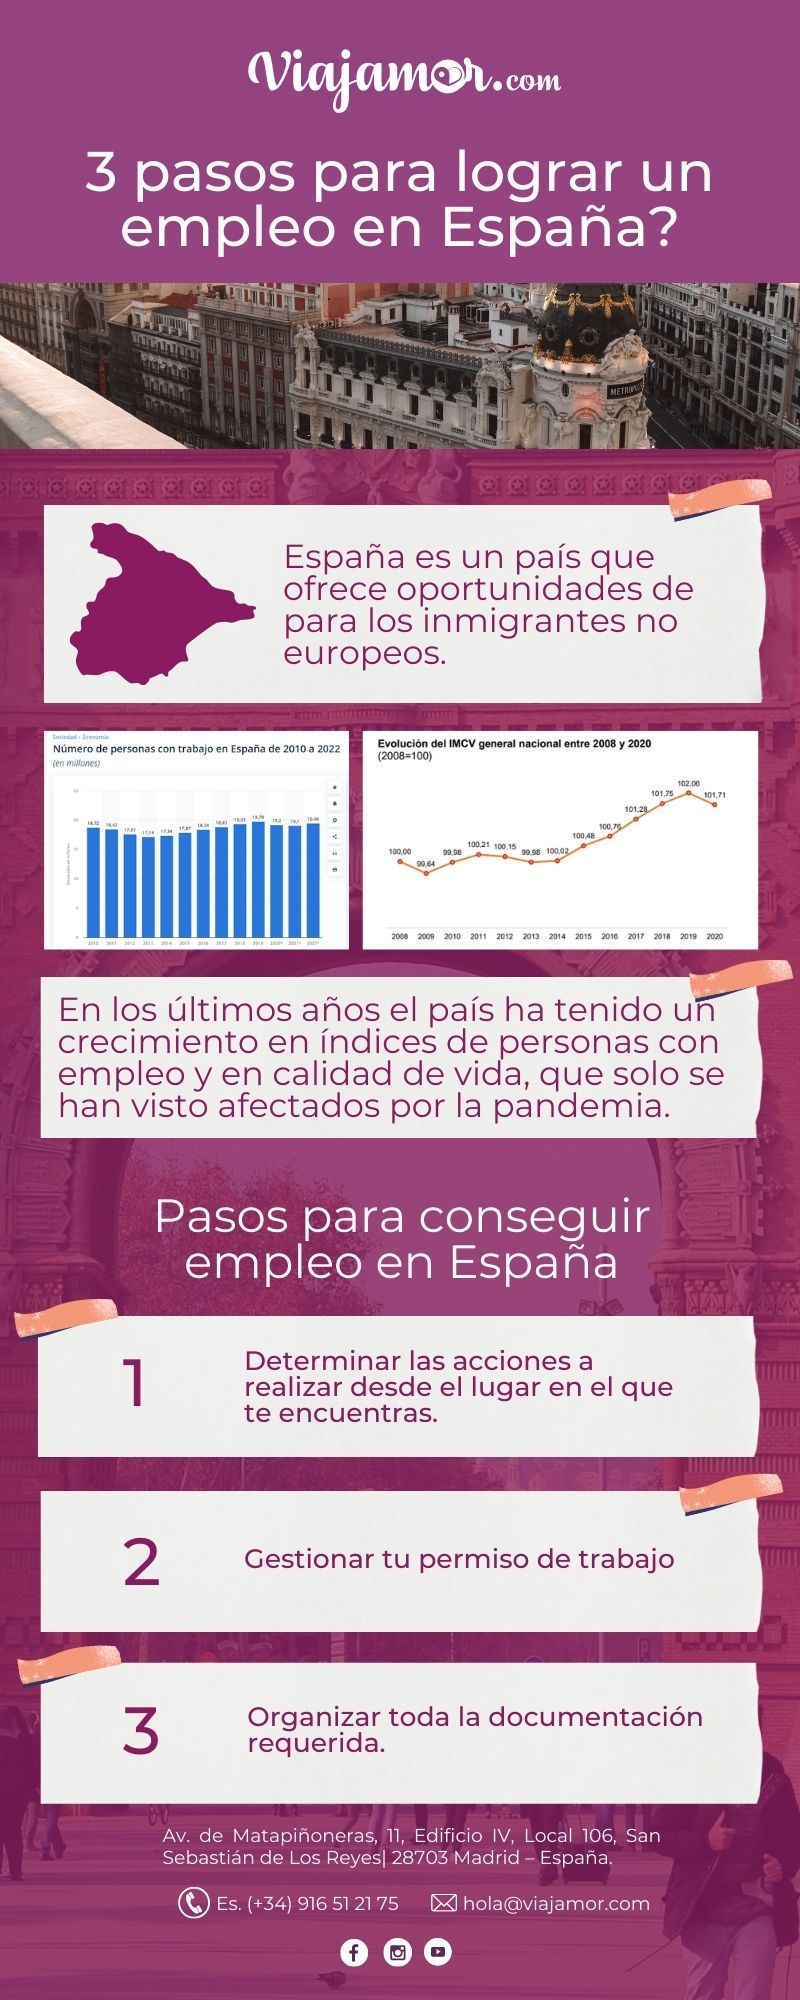 Trabajo Extranjeros en España